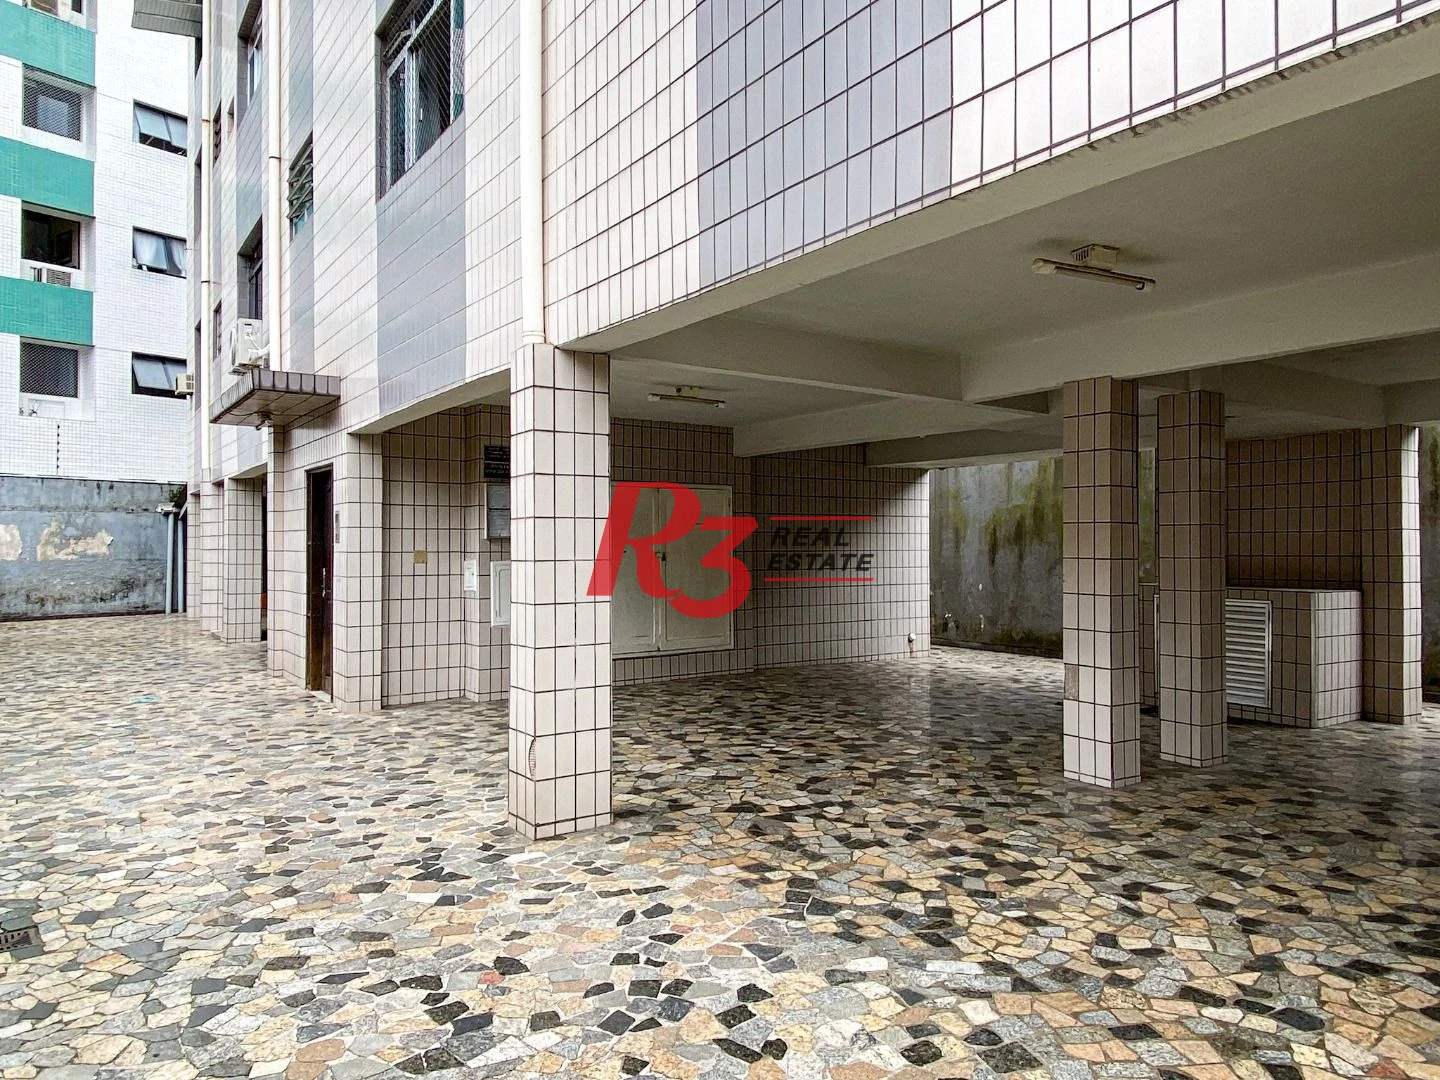 Apartamento à venda, 61 m² por R$ 290.000,00 - Vila Belmiro - Santos/SP